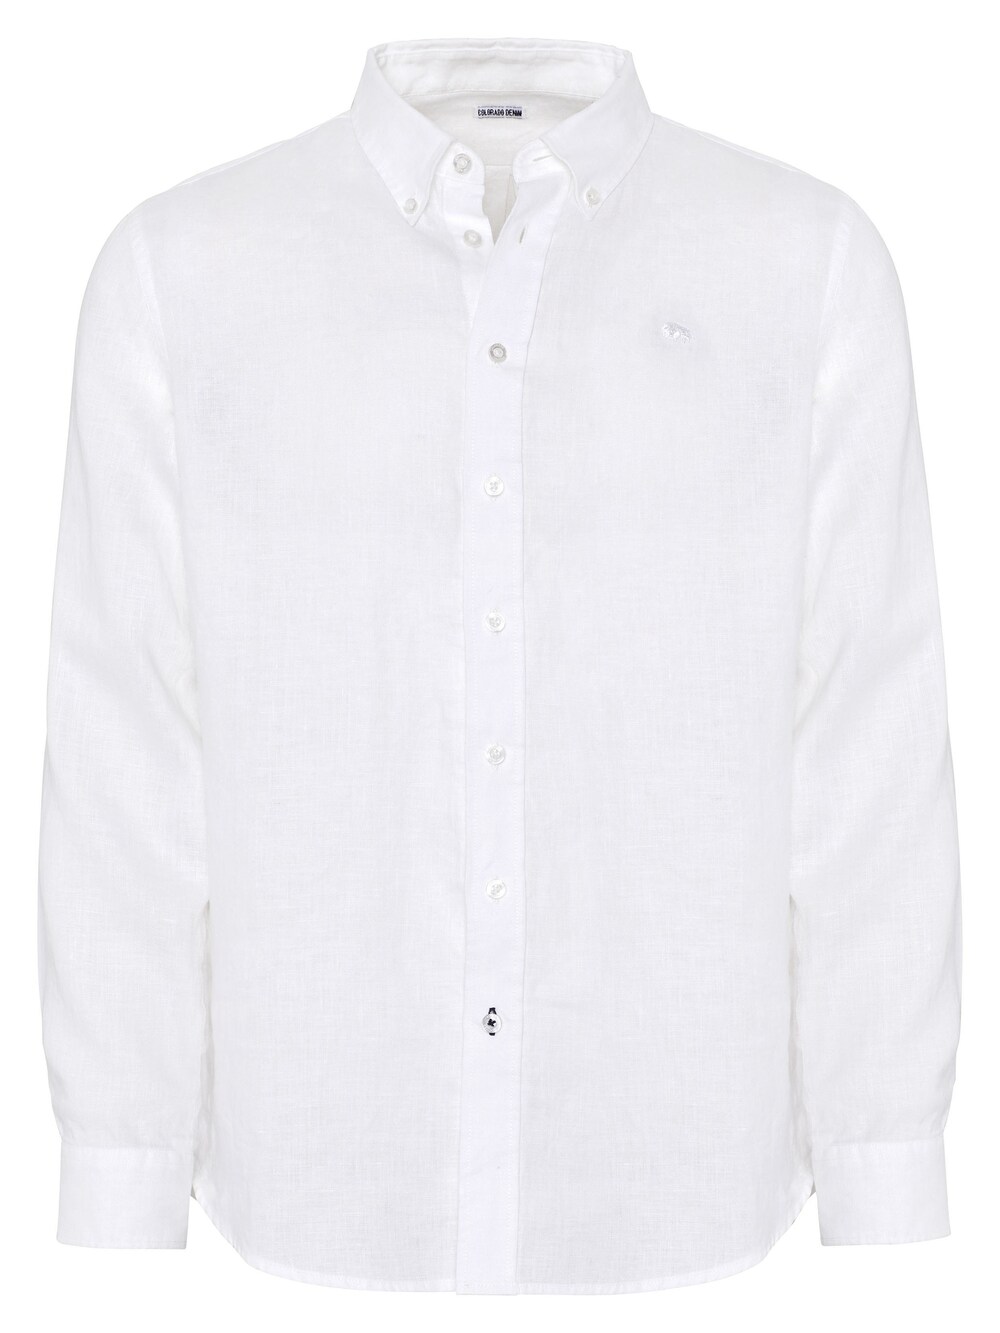 Рубашка на пуговицах стандартного кроя Colorado Denim, белый